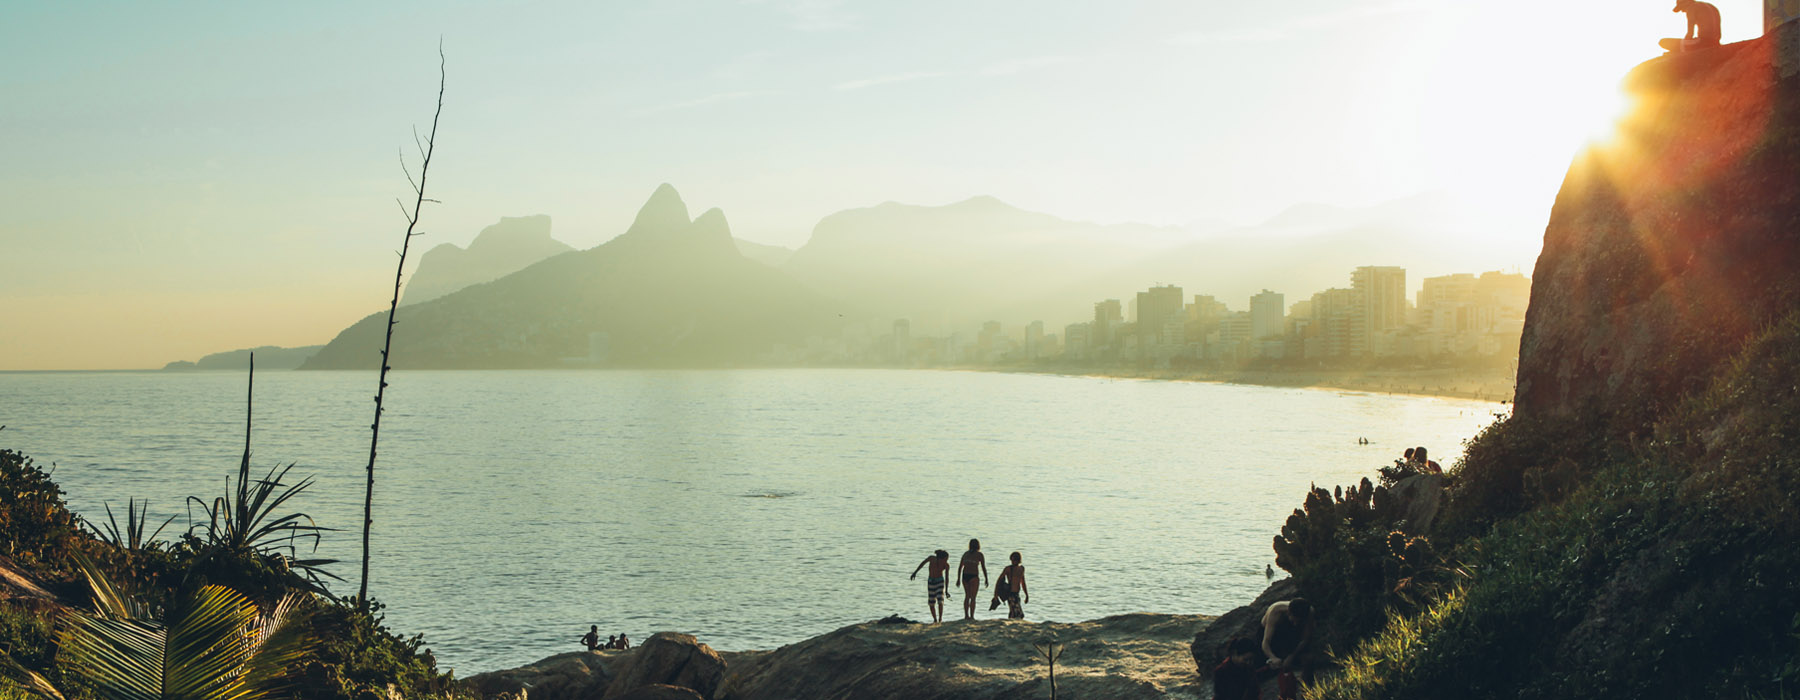 Des lieux qui s'engagent Brésil